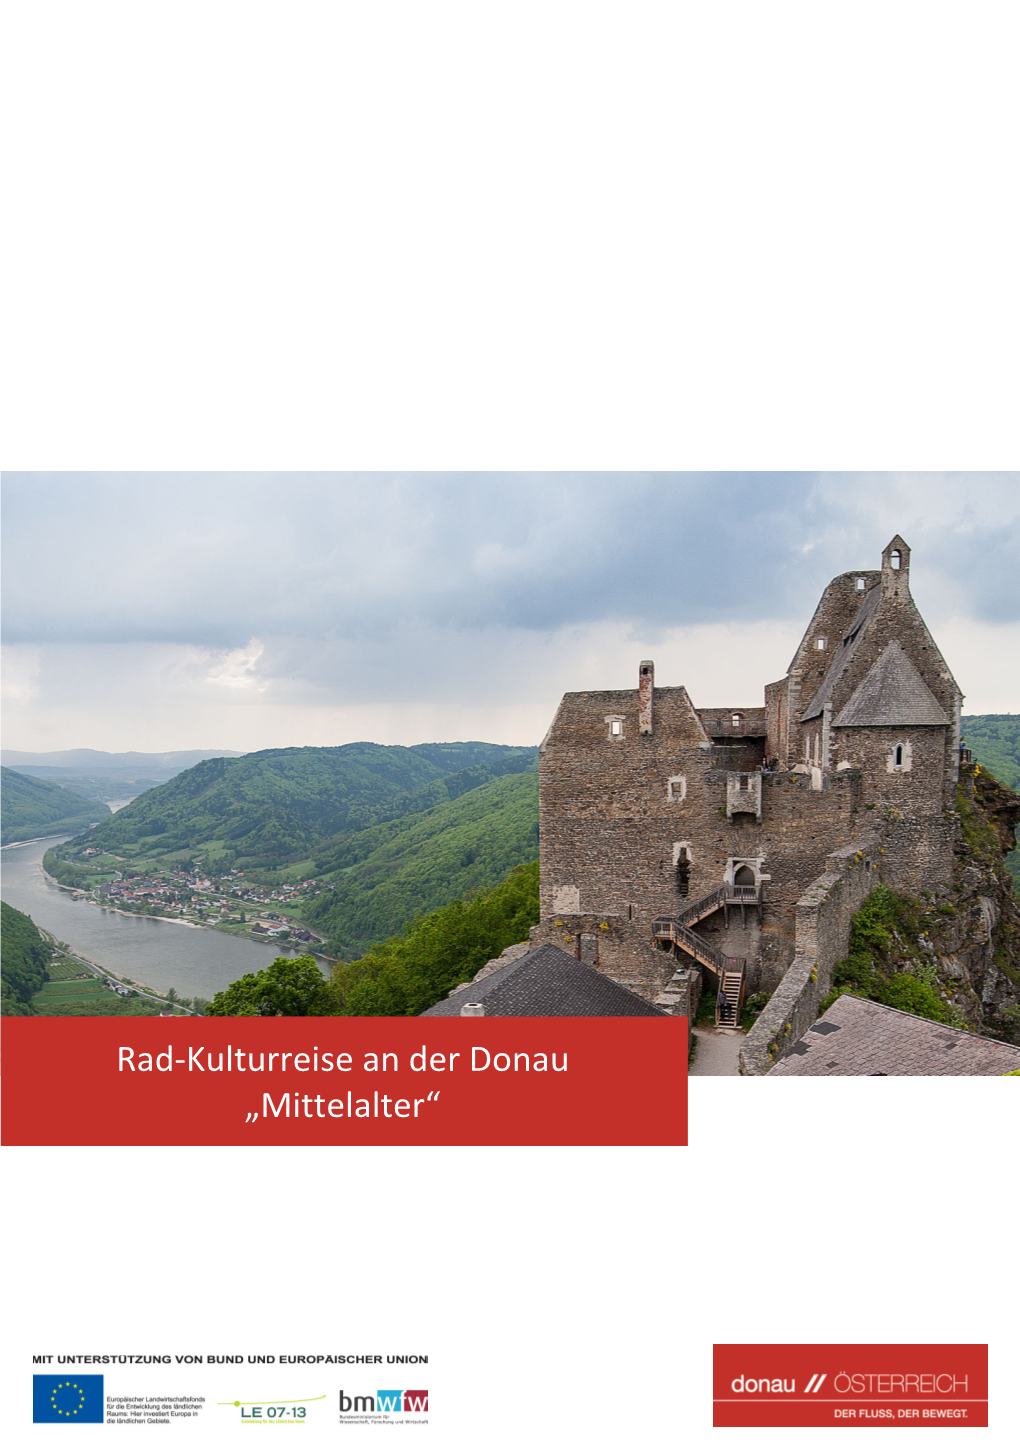 Mittelalter“ »Rad-Kulturreise an Der Donau „Mittelalter“« 2 / 59